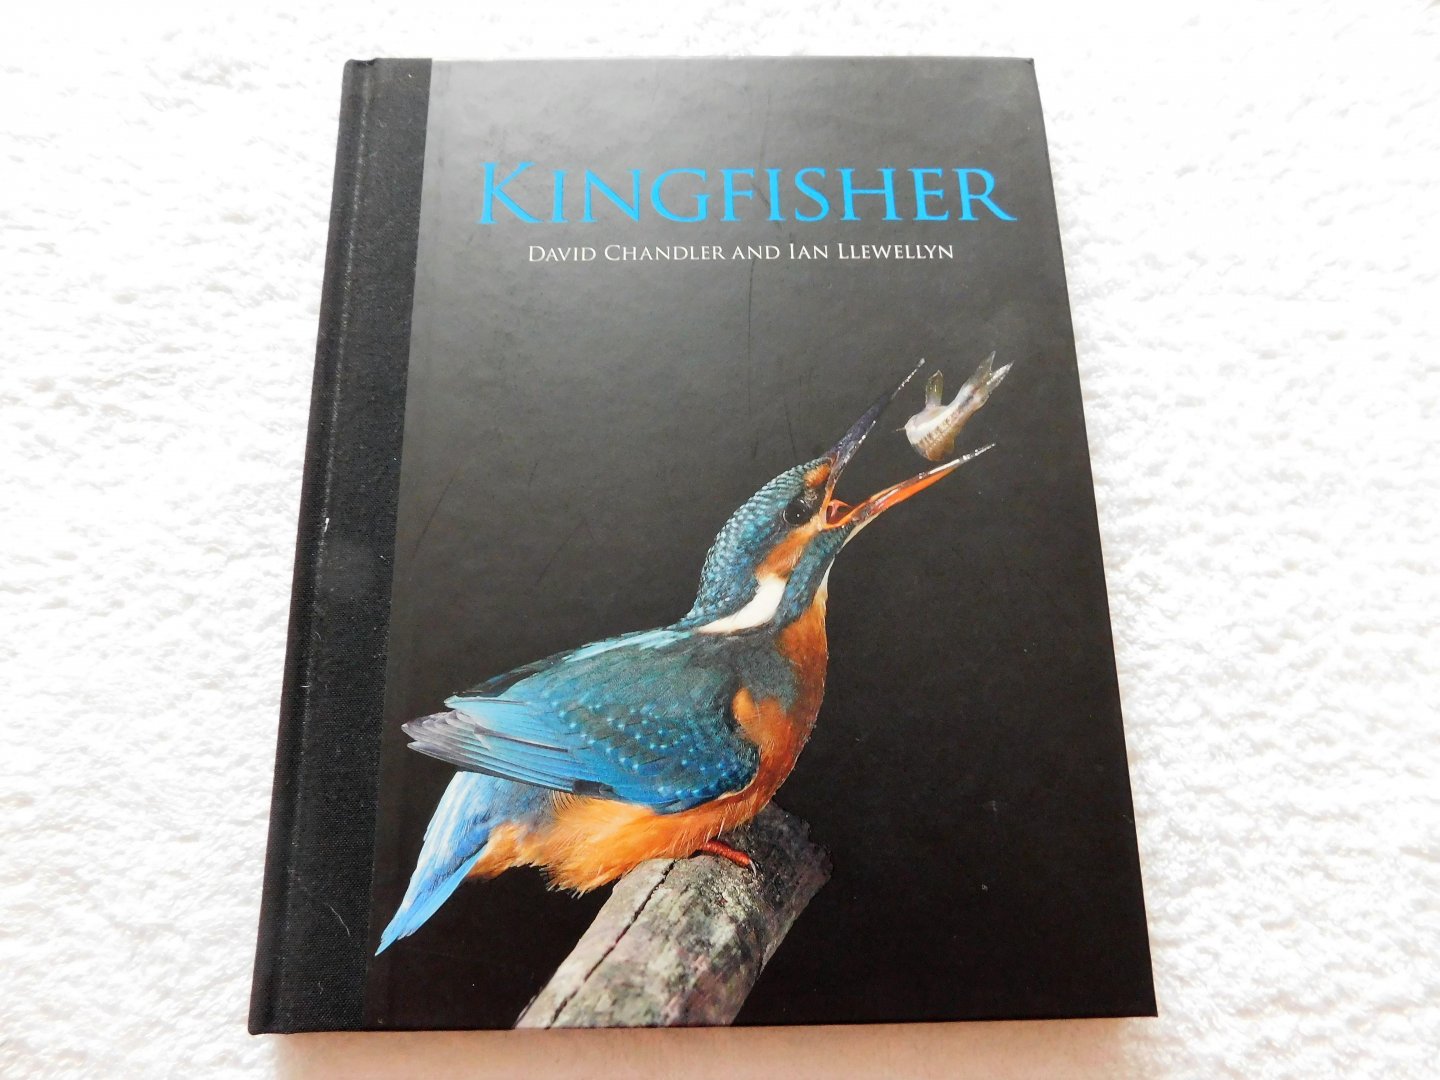 David Chandler and Ian Llewellyn - Kingfisher